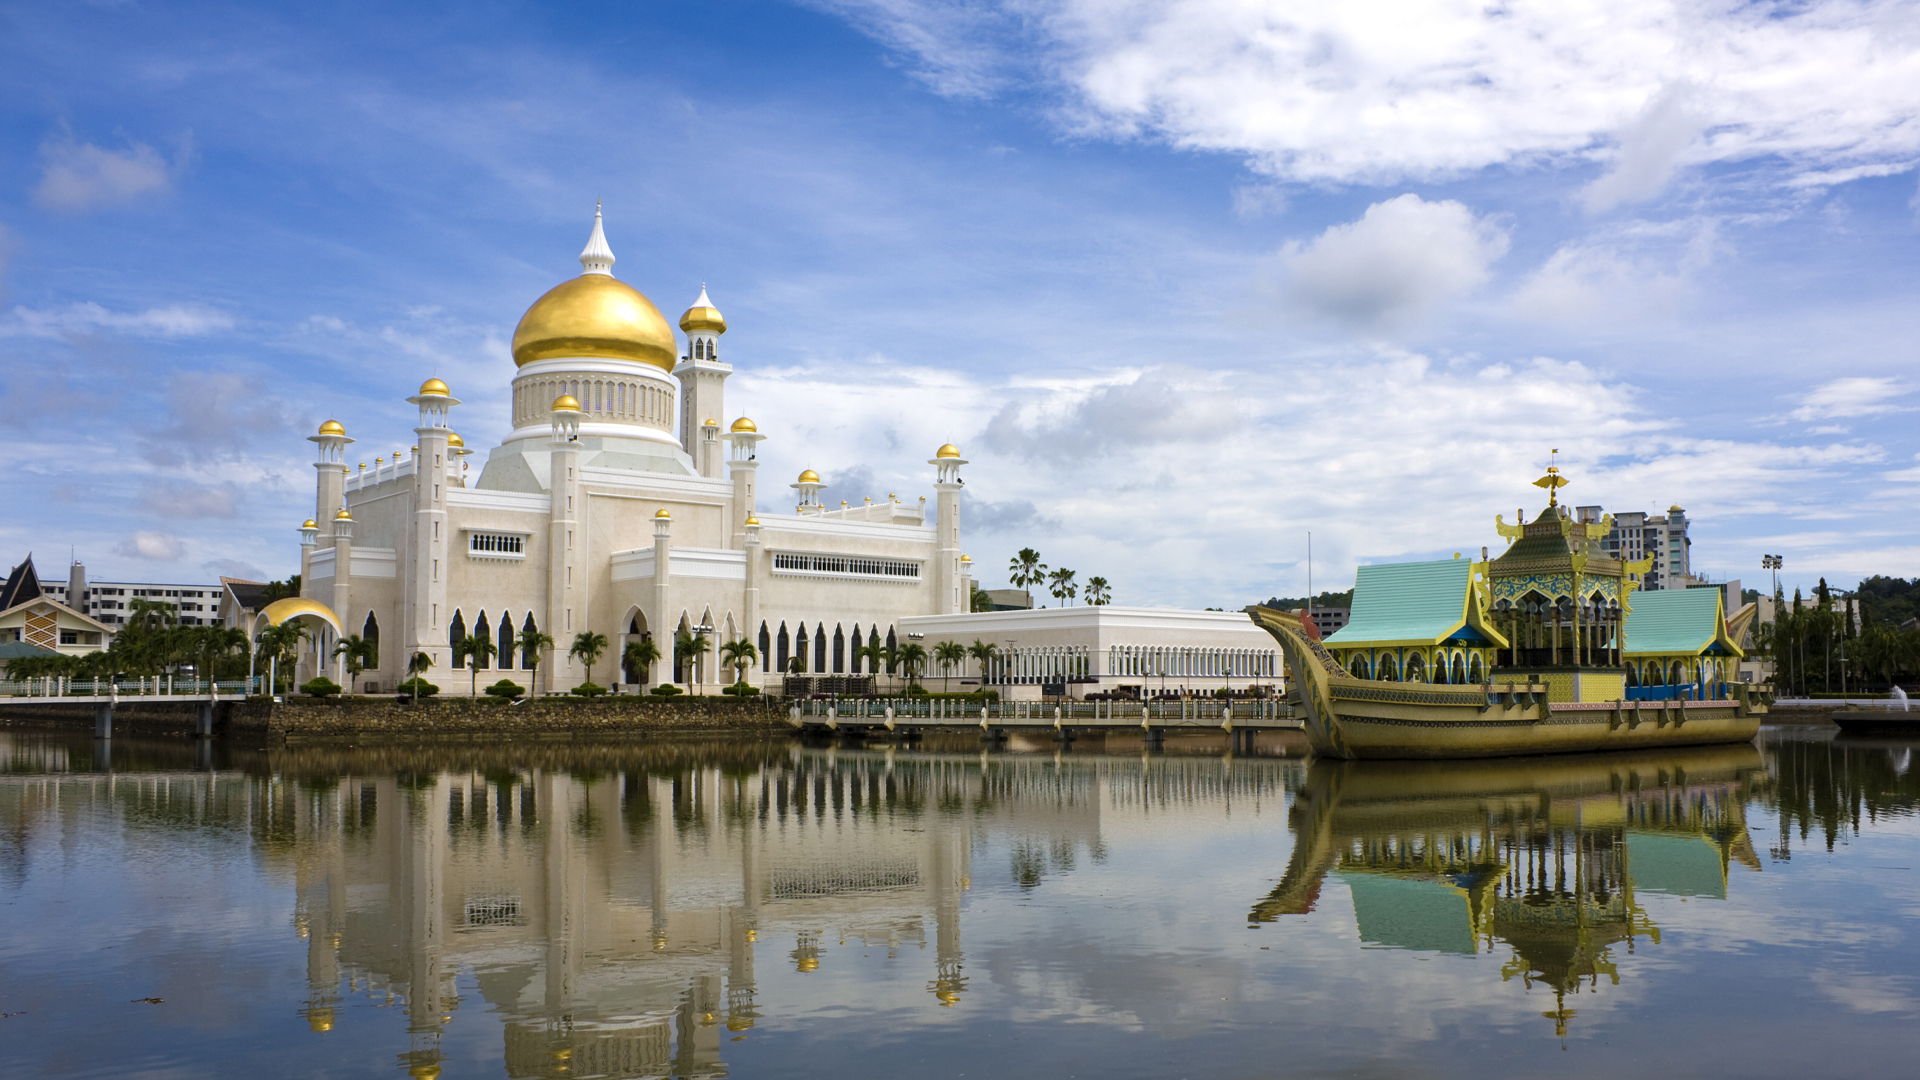 Brunei Image for Hero Box